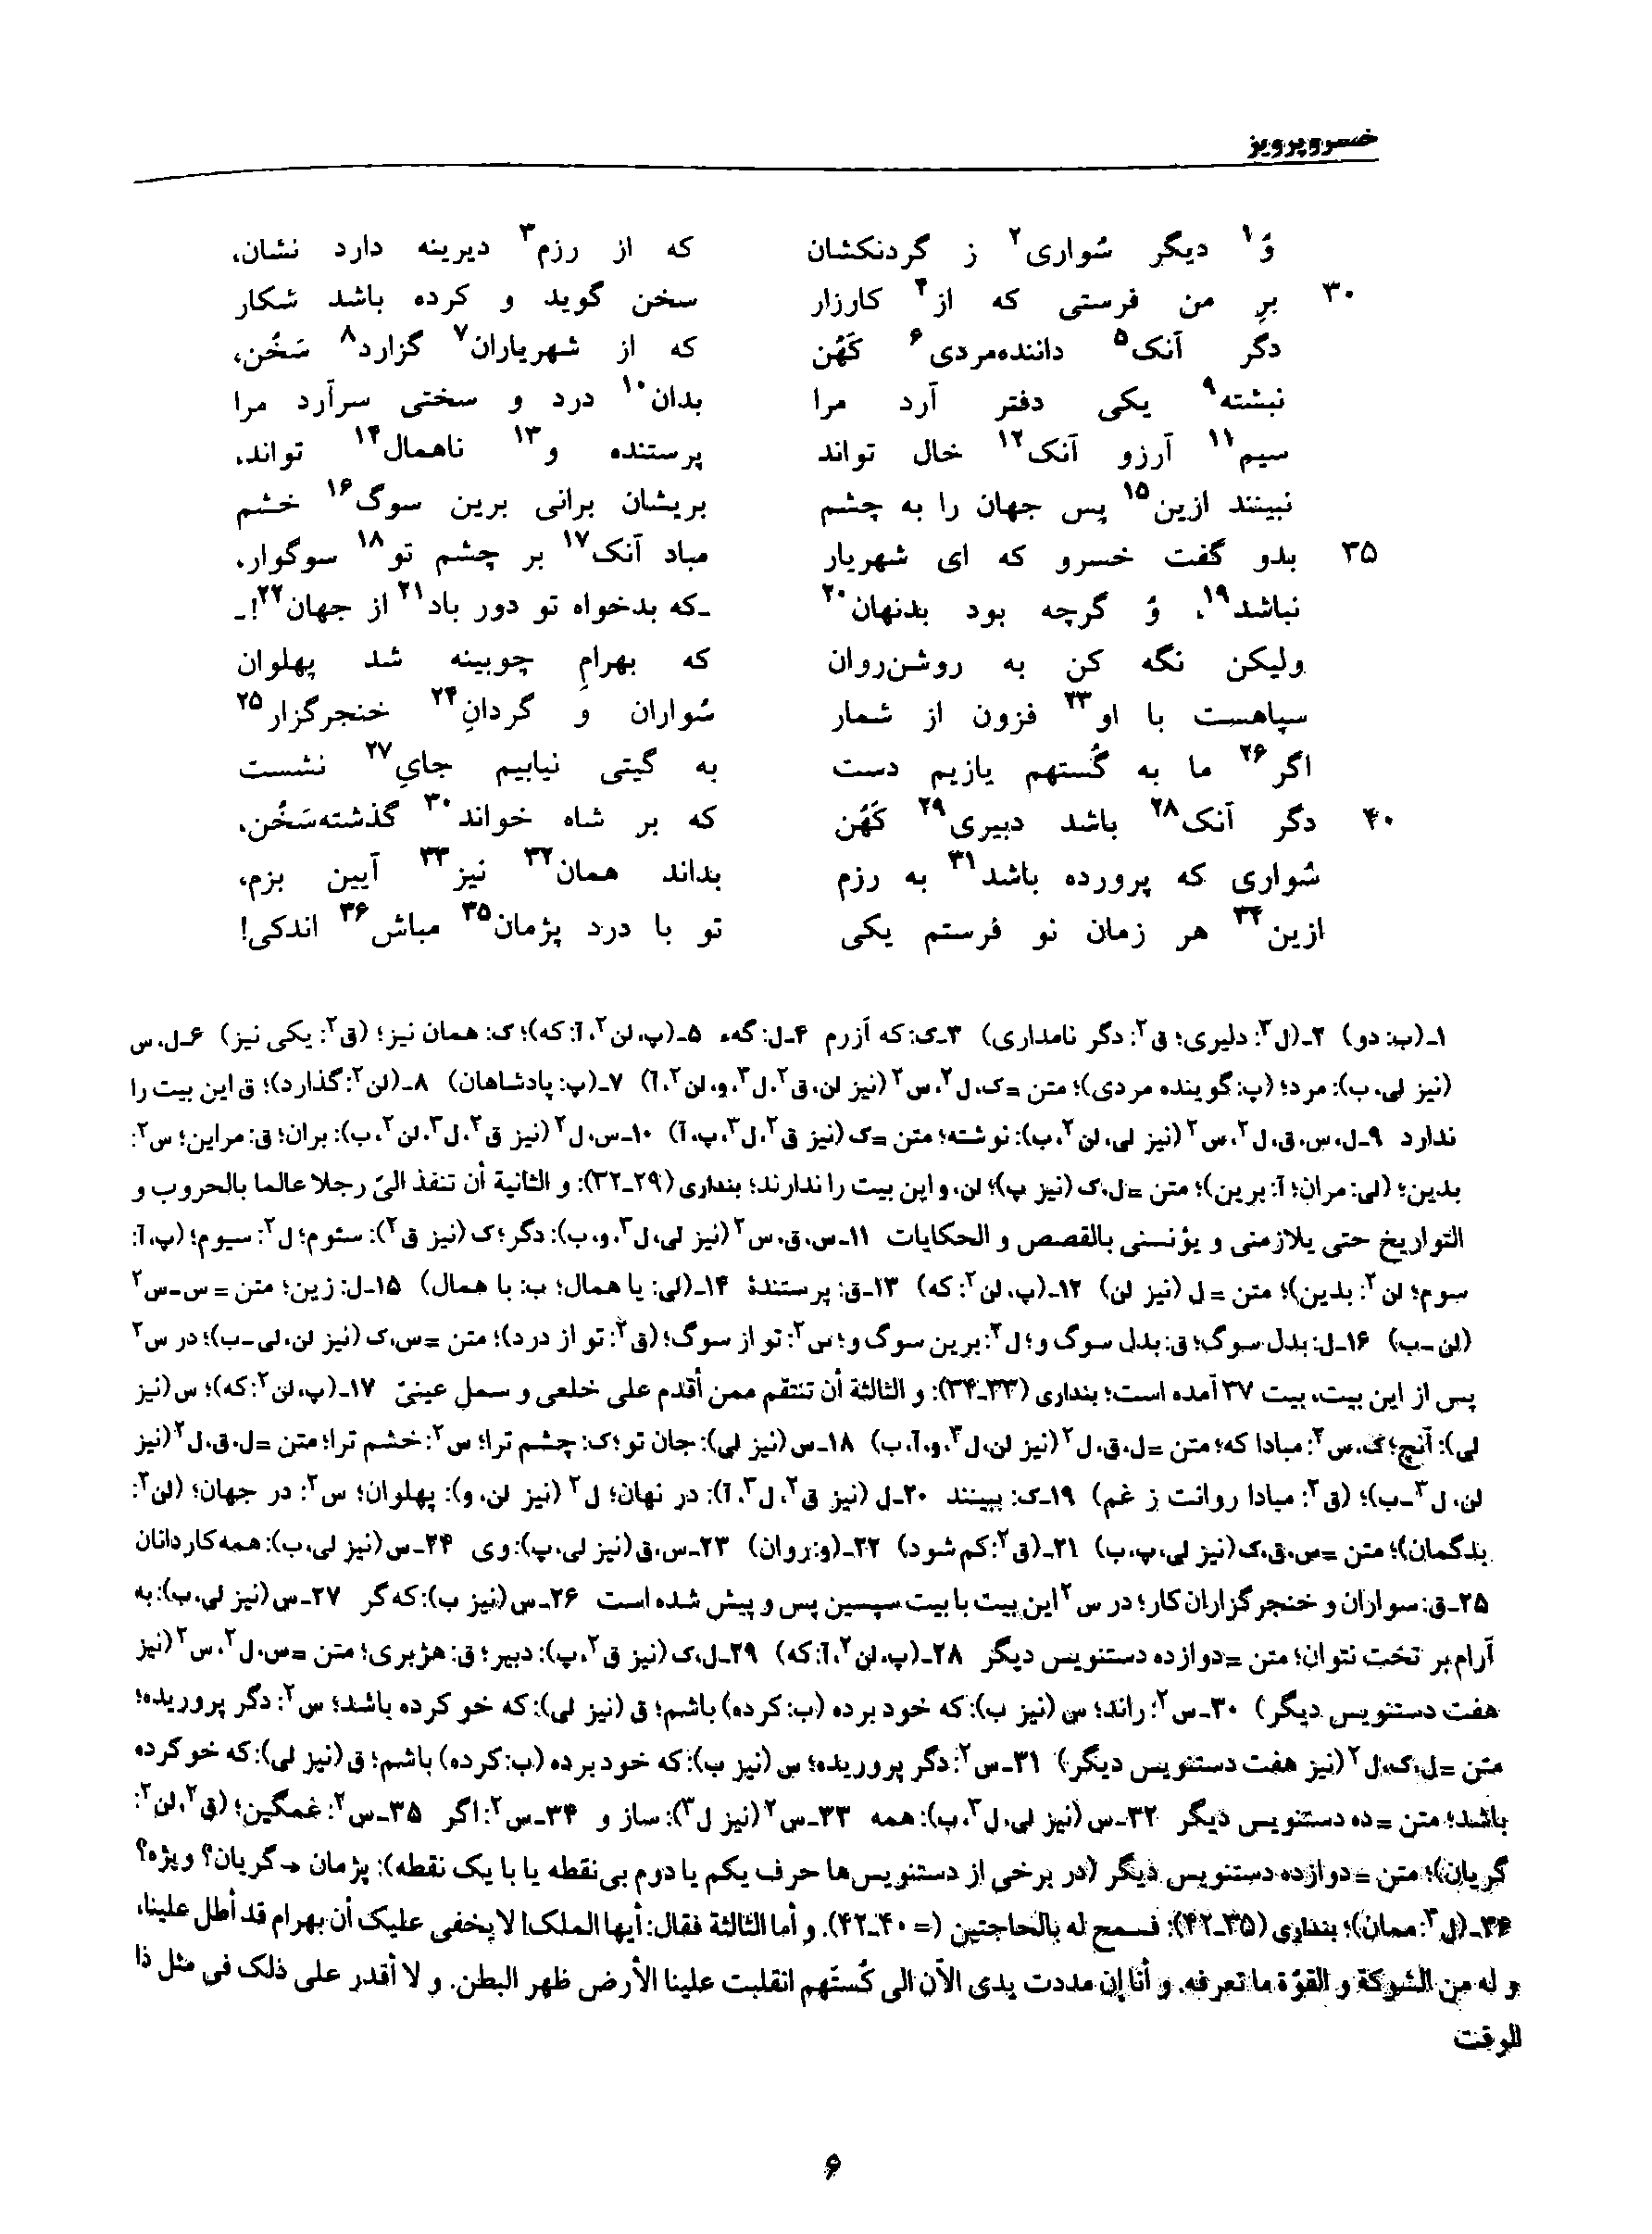 vol. 8, p. 6